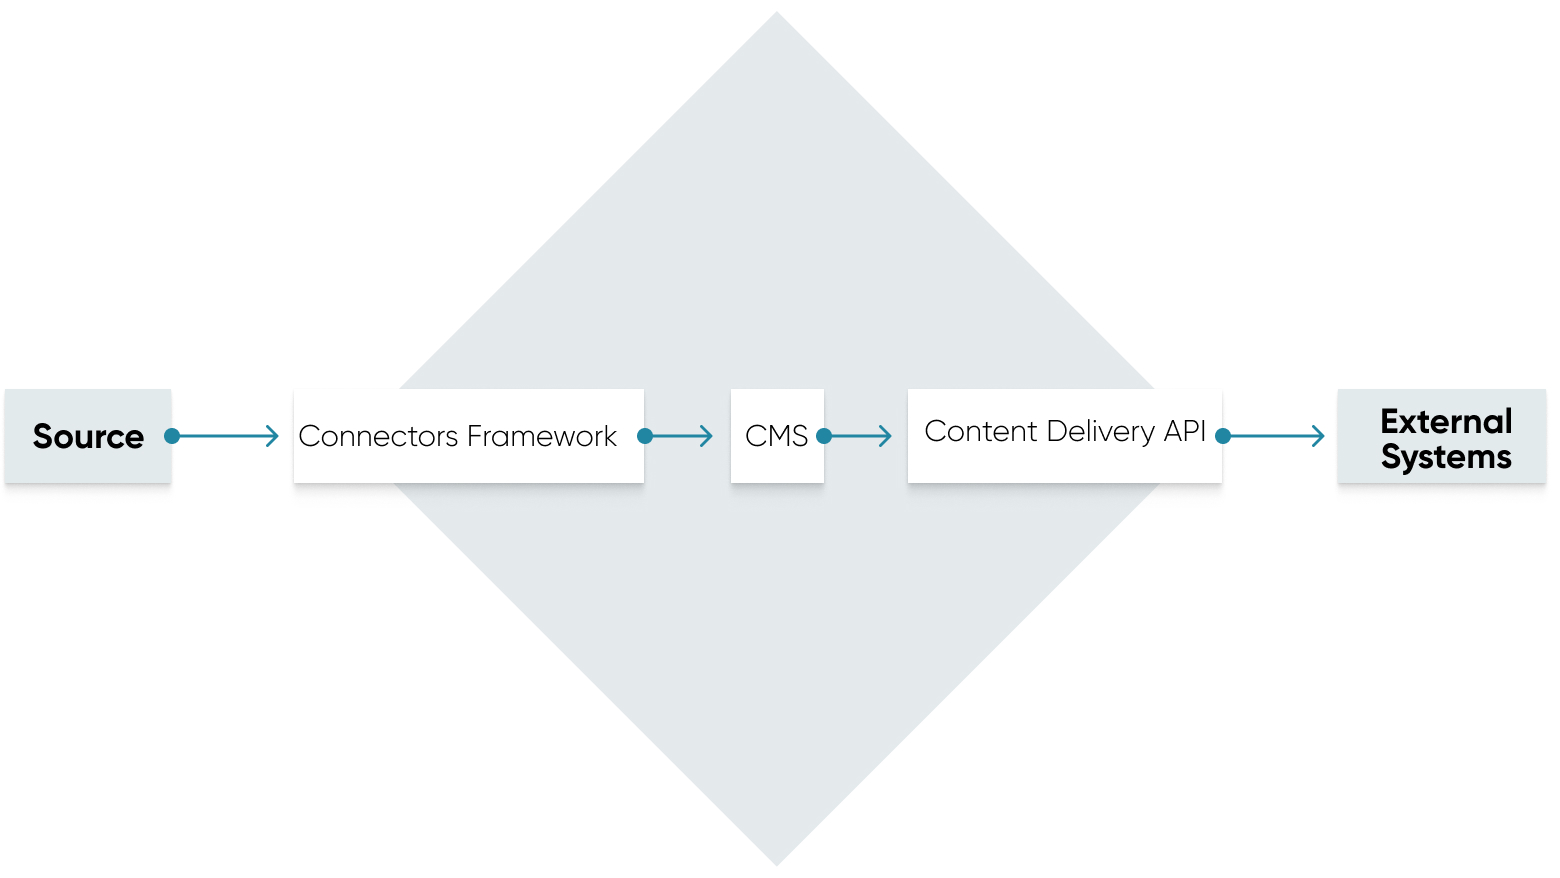 Les données passent de la source au framework Connectors, au CMS, à l'API de diffusion de contenu aux systèmes externes.